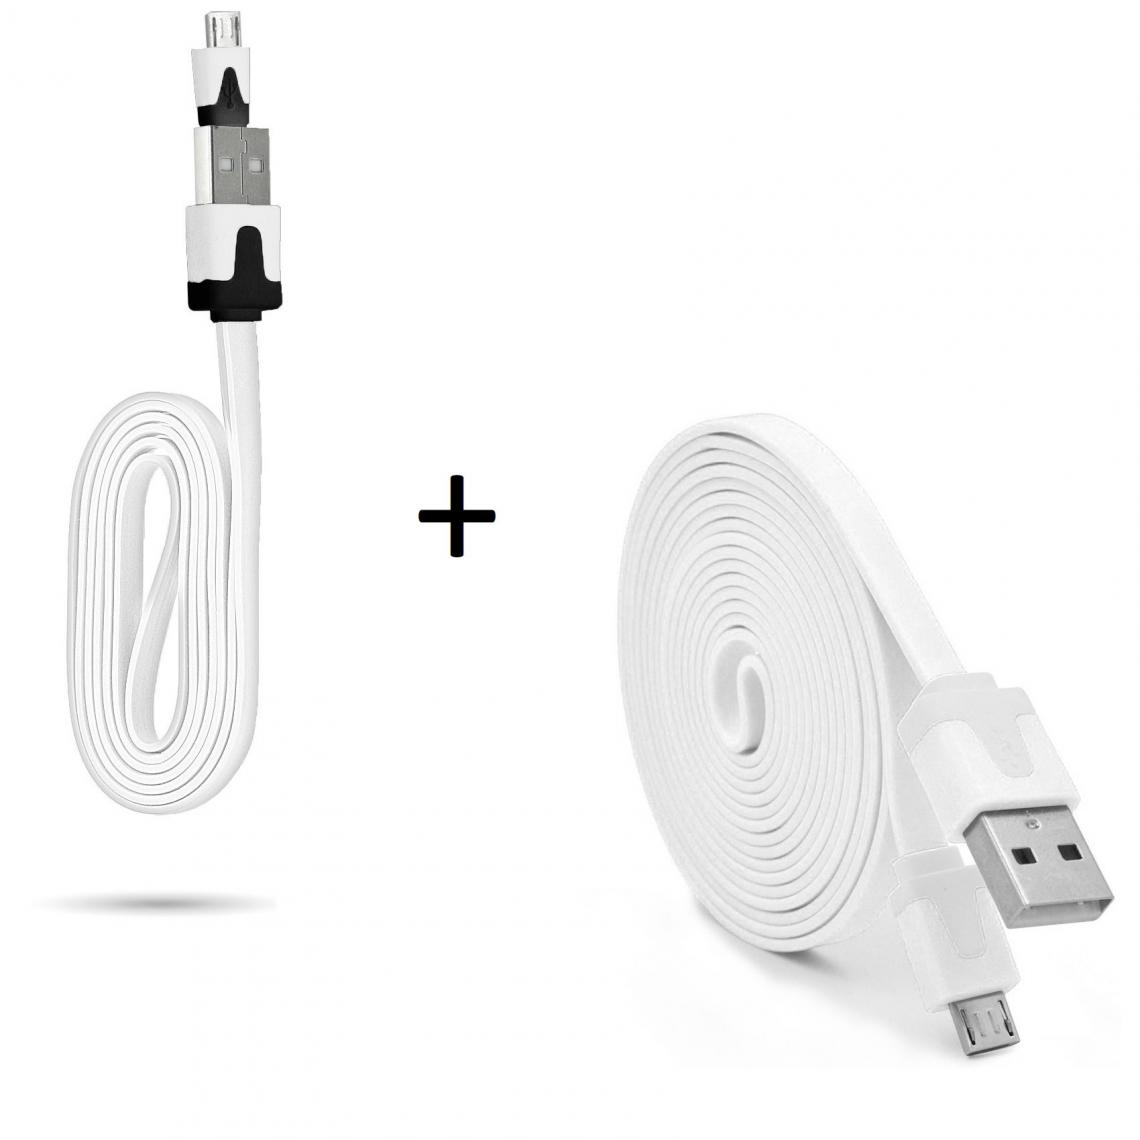 Shot - Pack Chargeur pour XIAOMI Redmi Note 6 Smartphone Micro USB (Cable Noodle 3m + Cable Noodle 1m) Android (BLANC) - Chargeur secteur téléphone